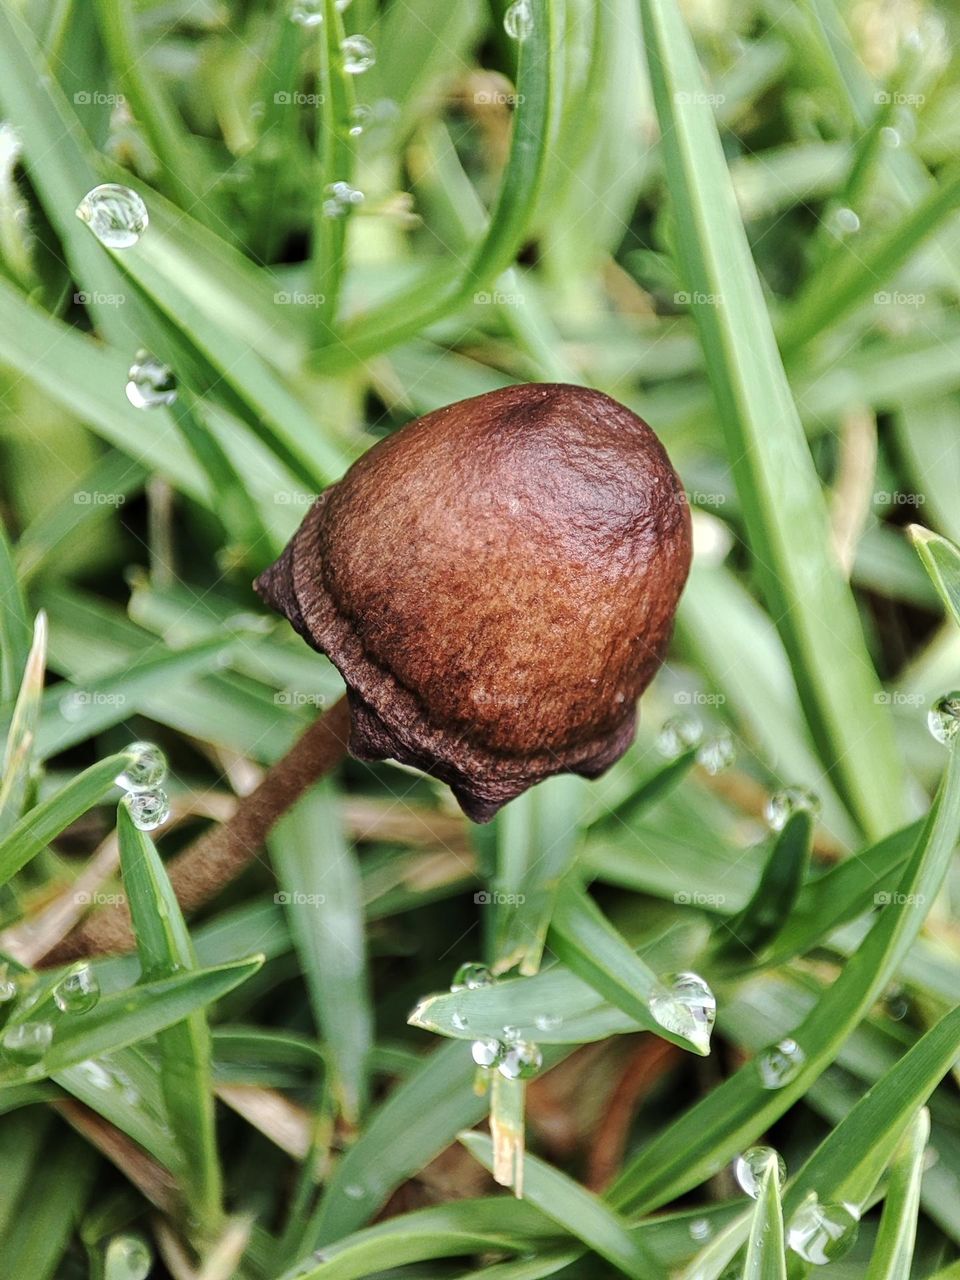 Mushroom on grass